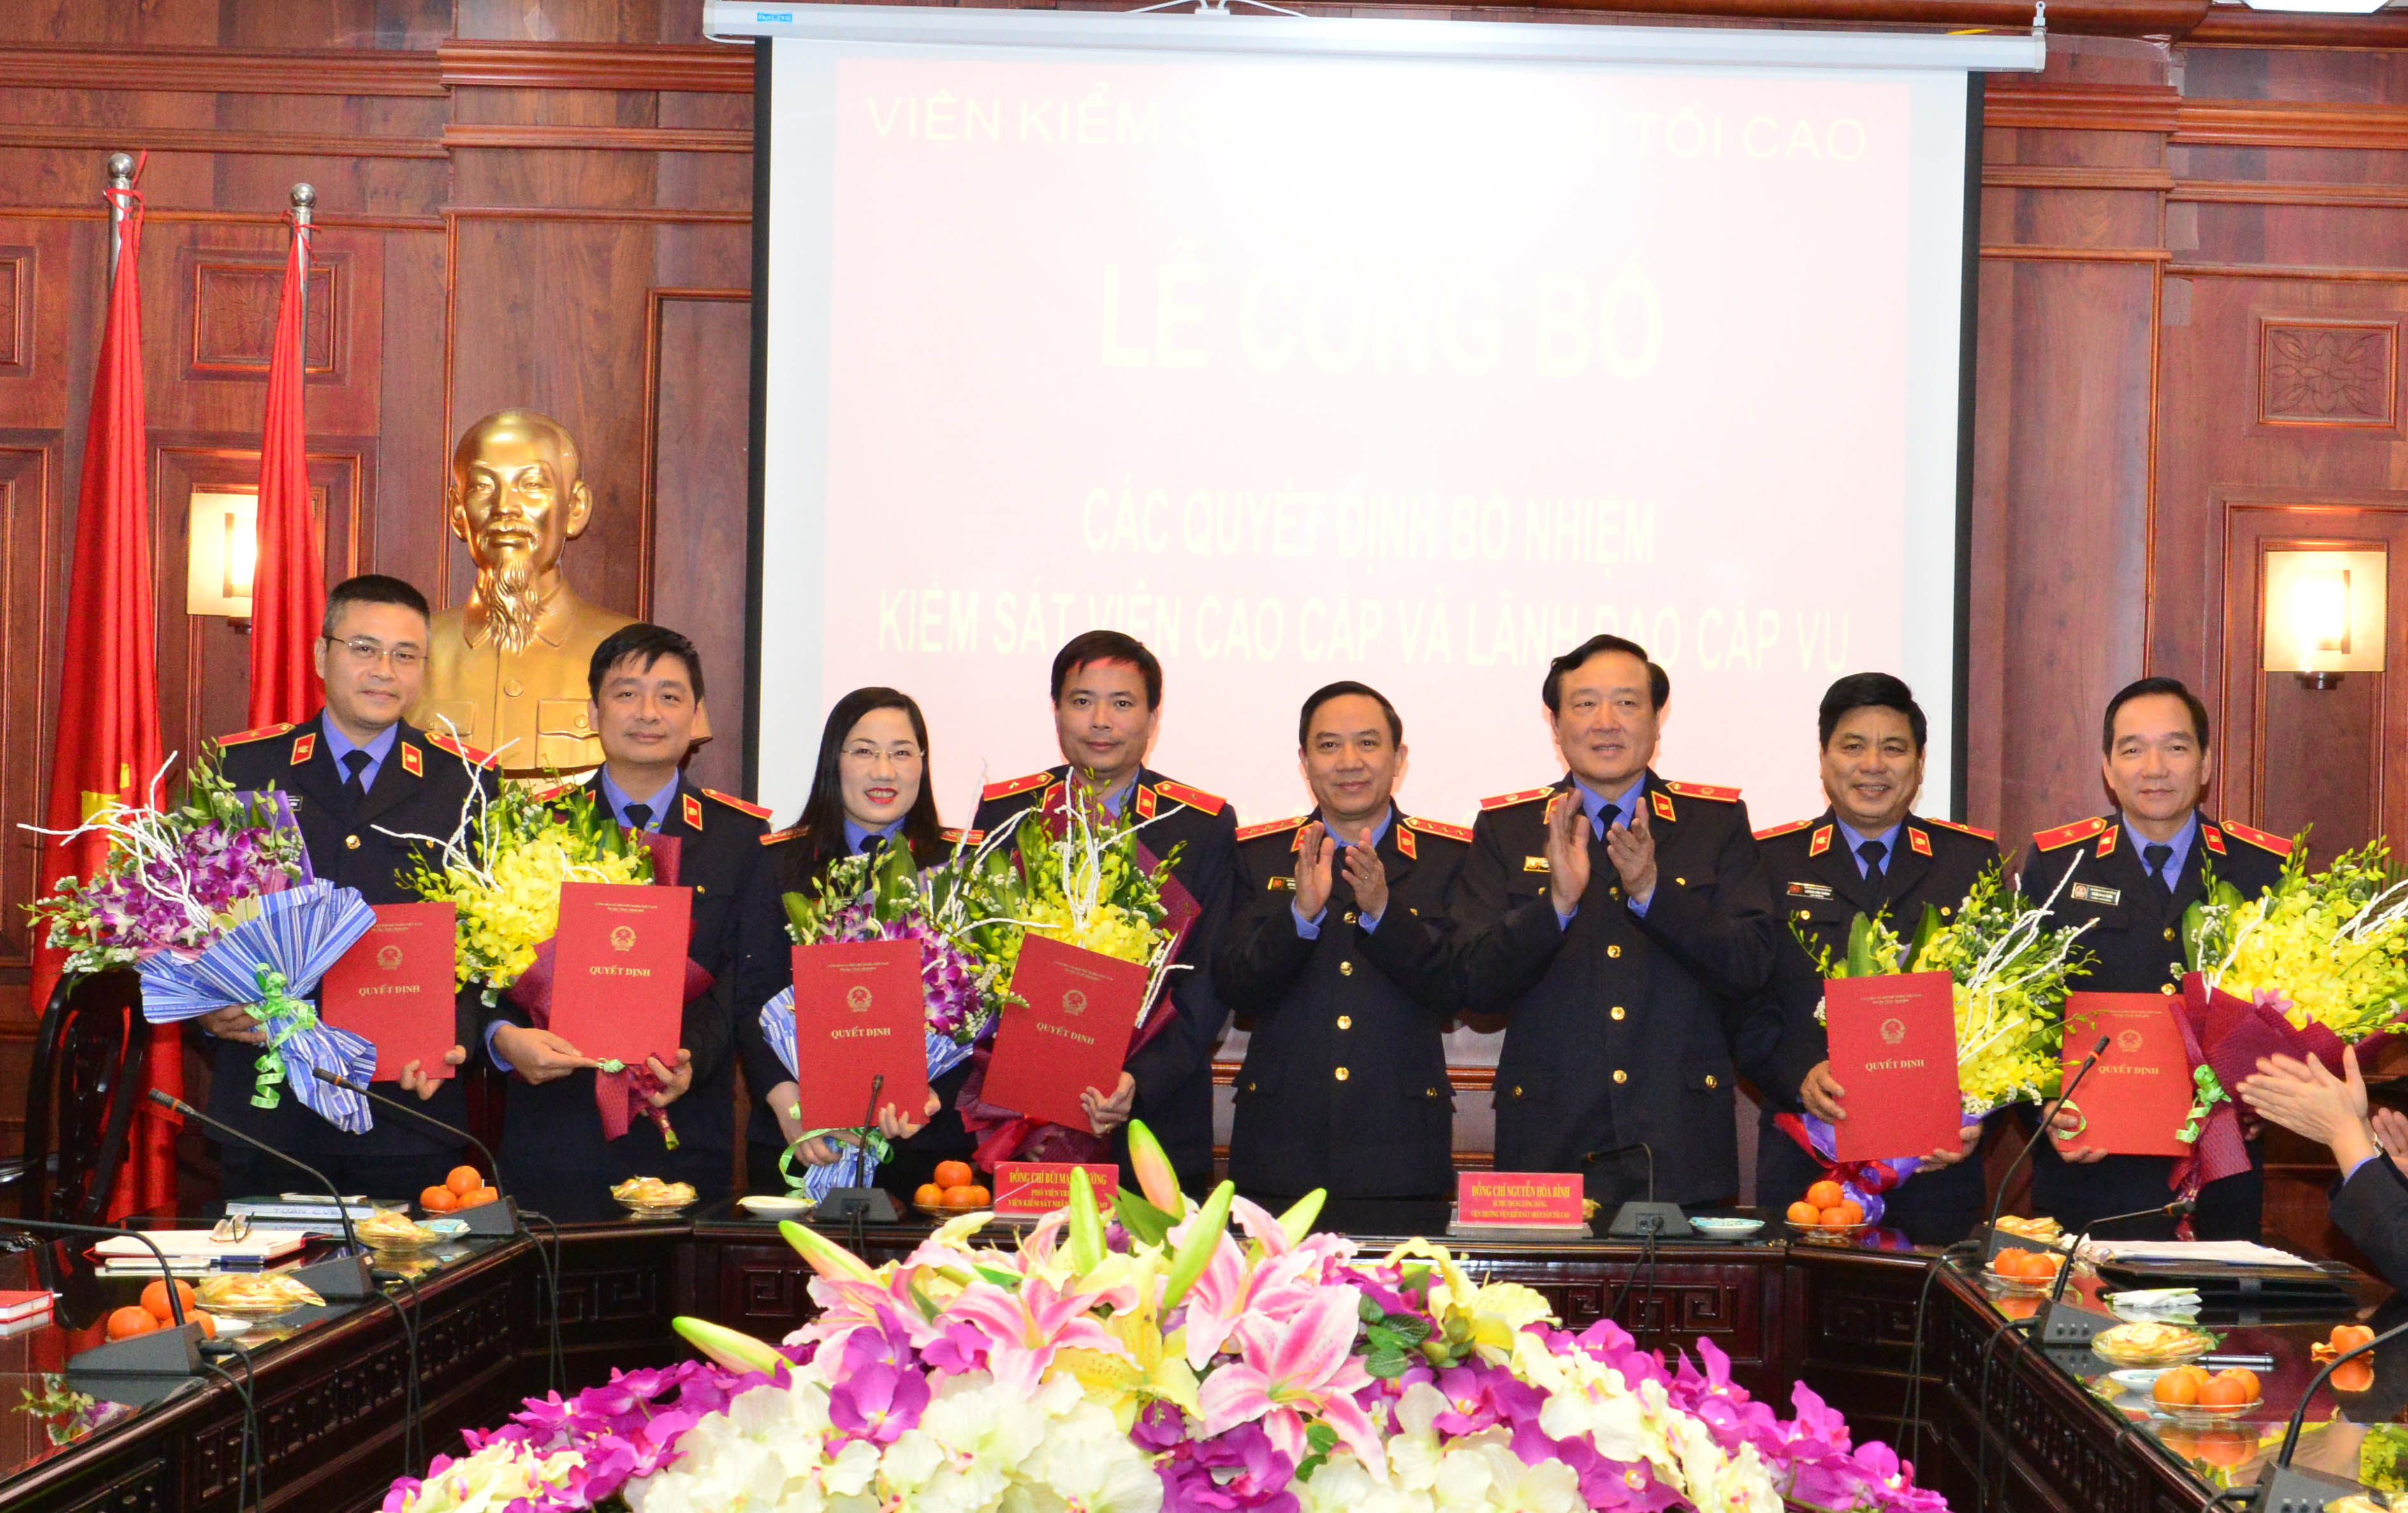 Viện trưởng VKSNDTC Nguyễn Hòa Bình và Phó Viện trưởng VKSNDTC Bùi Mạnh Cường trao quyết định và tặng hoa chúc mừng các đồng chí được bổ nhiệm tại buổi Lễ